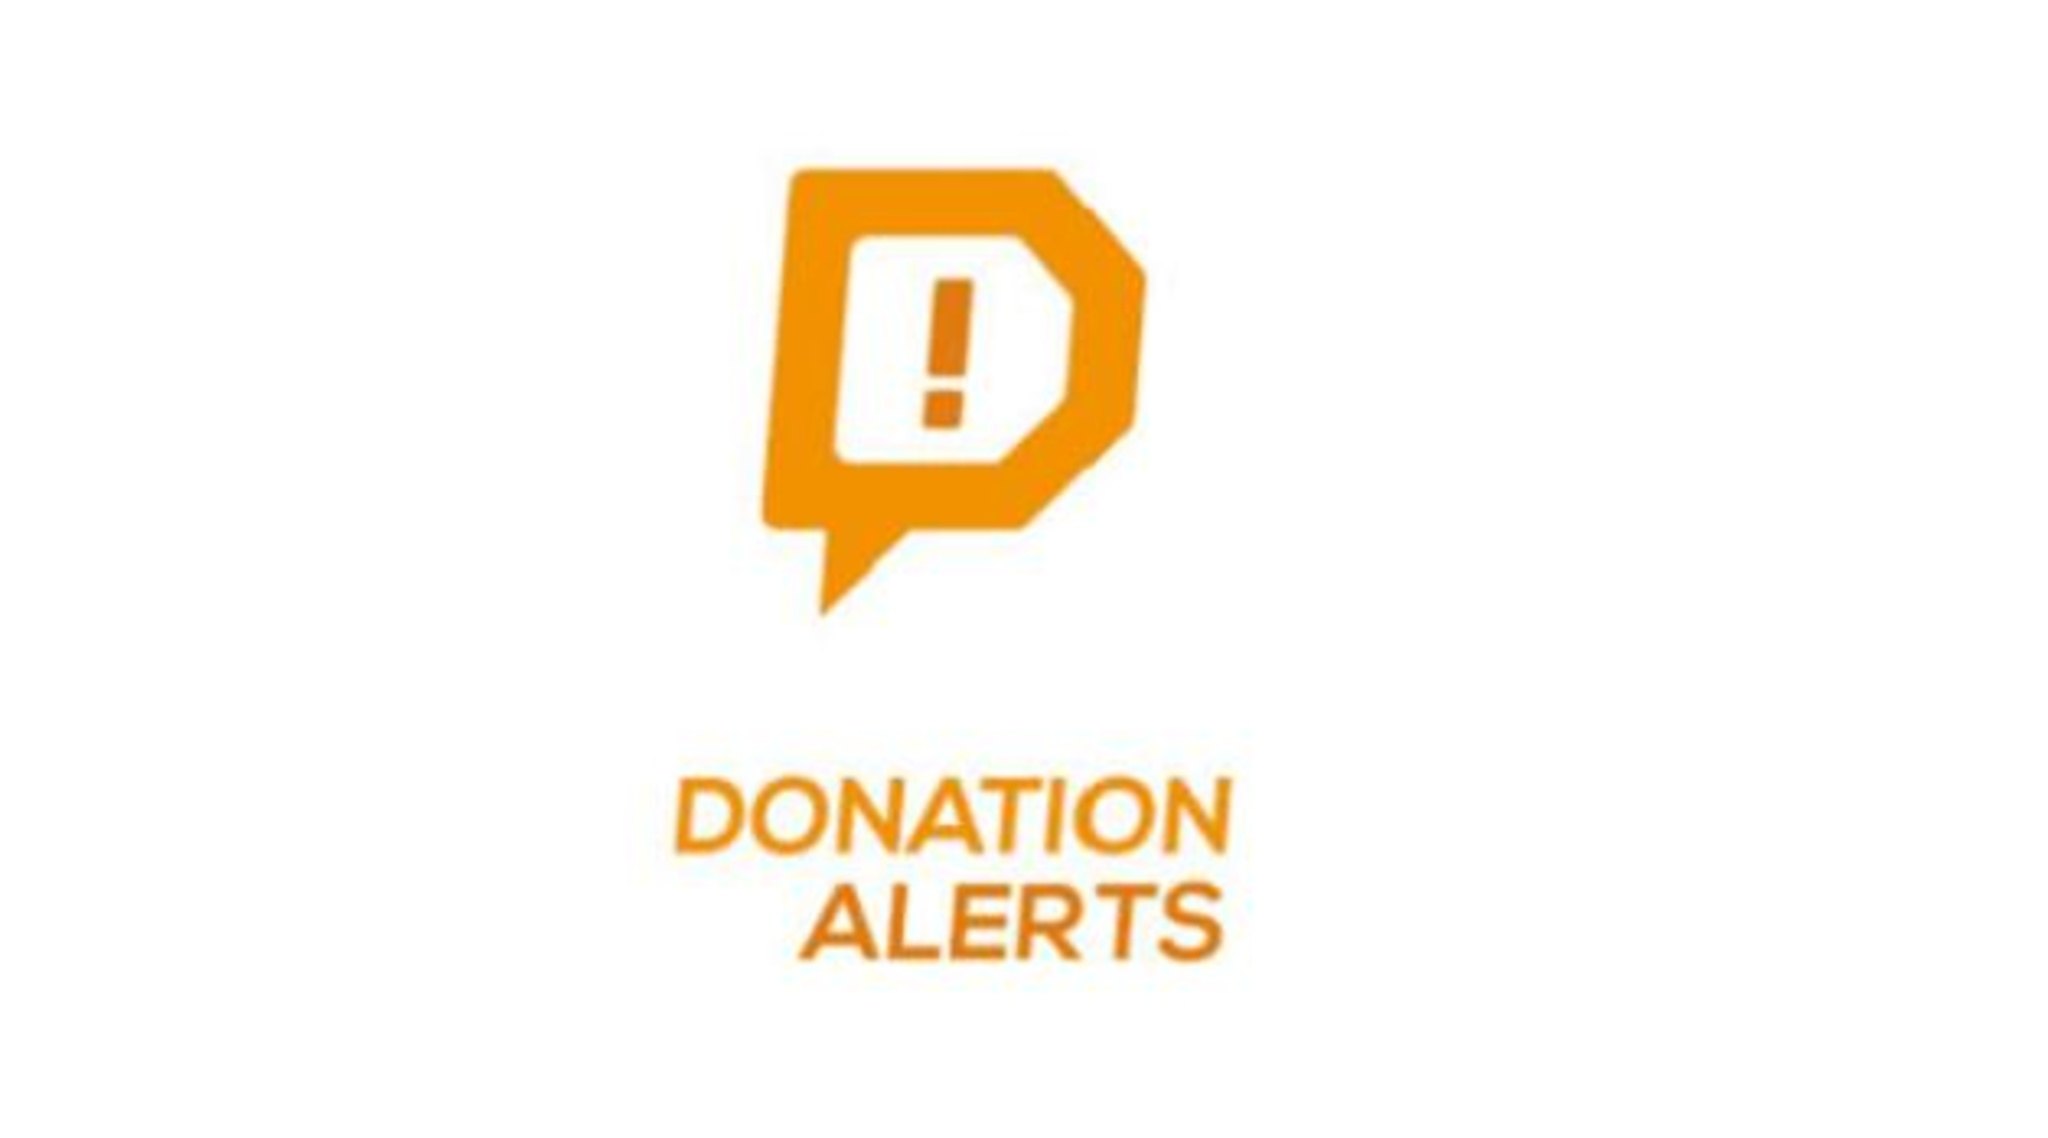 Донат https www donationalerts com. Значок donationalerts. Логотип donation Alerts. Фото для donationalerts. Donationalerts ярлык.